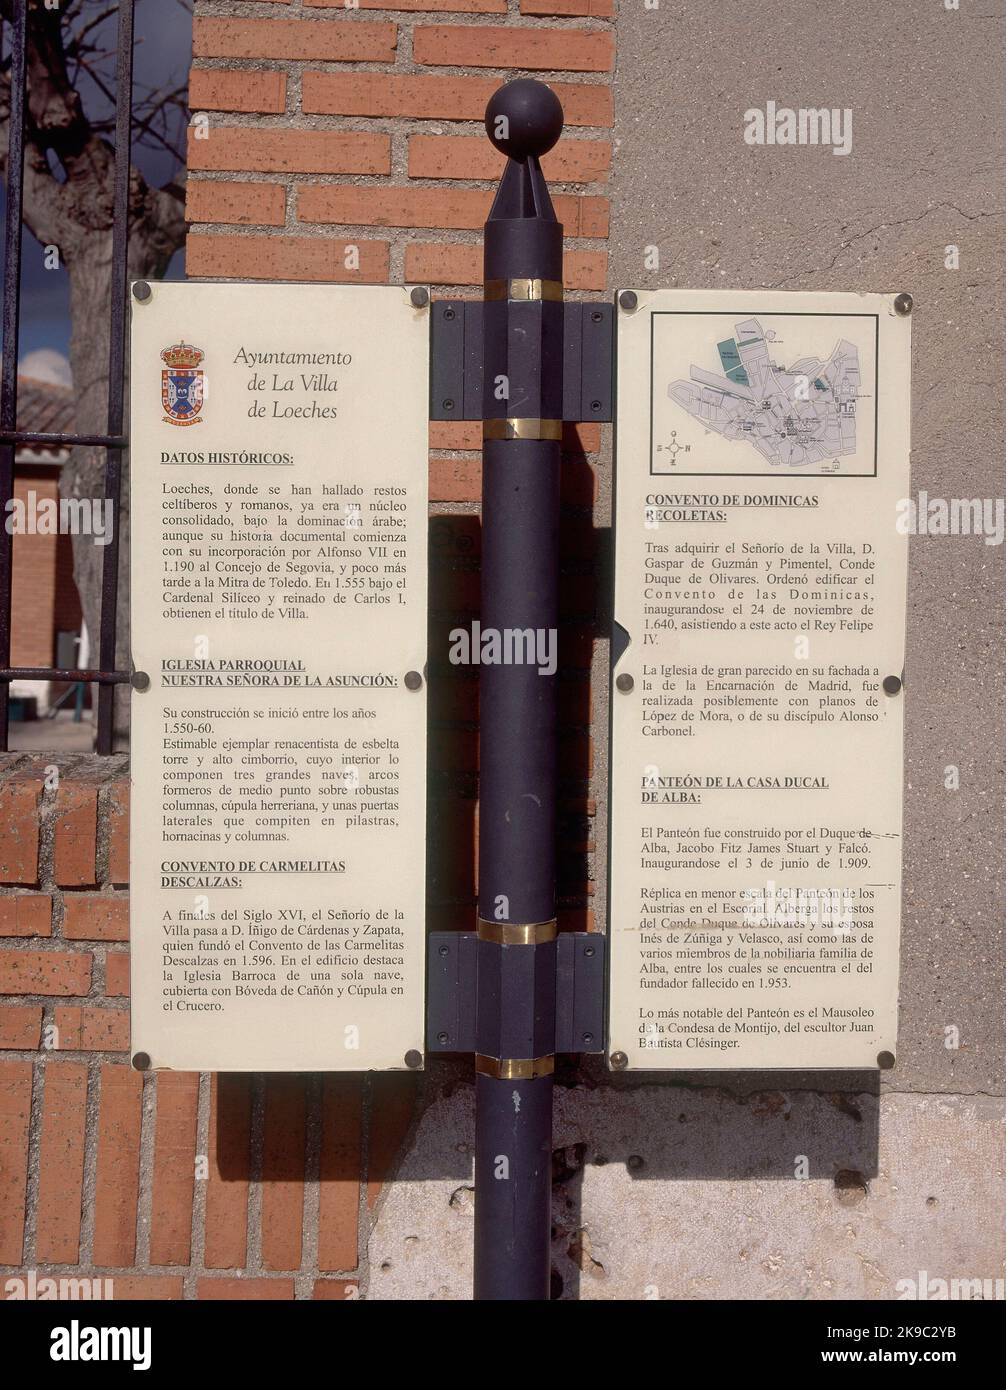 PLACA EXPLICATIVA CON LOS DATOS HISTORICOS DE LOS PRINCIPALES MONUMENTOS DE LOECHES Y SU PLANO. Location: EXTERIOR. LOECHES. MADRID. SPAIN. Stock Photo